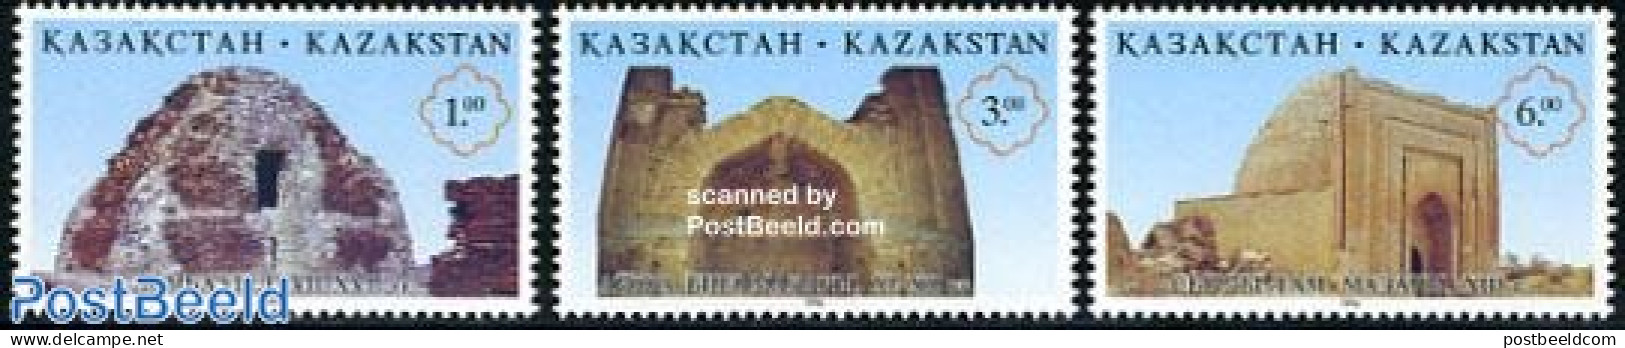 Kazakhstan 1996 Architecture 3v, Mint NH, Art - Architecture - Kazachstan